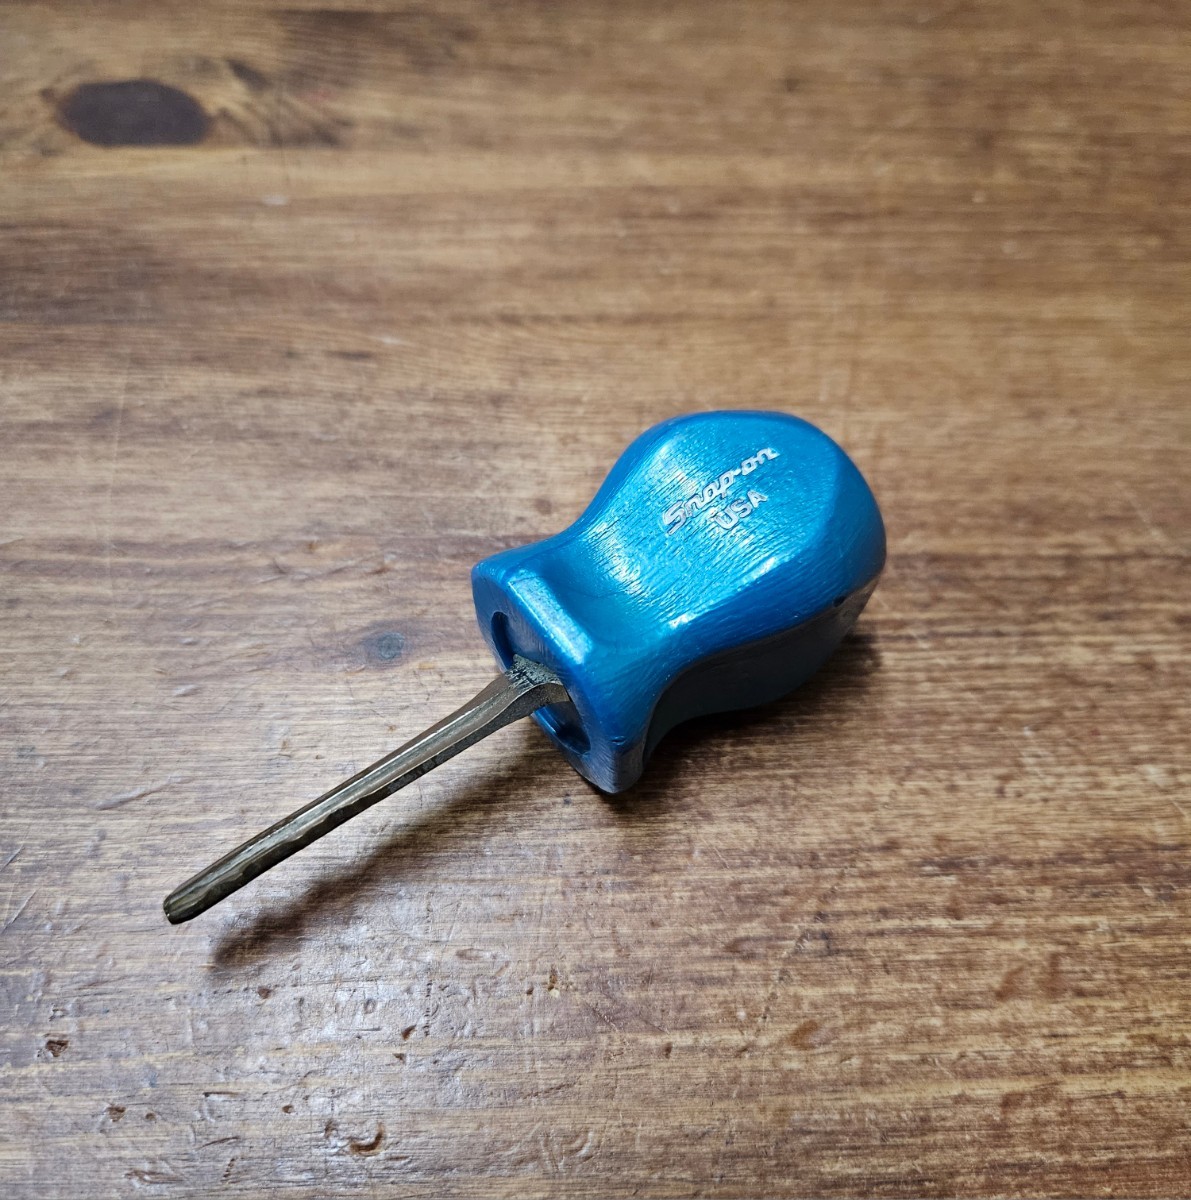  Snap-on рукоятка брелок для ключа редкий товар snap-on Setagaya основа оттенок голубого Vintage 